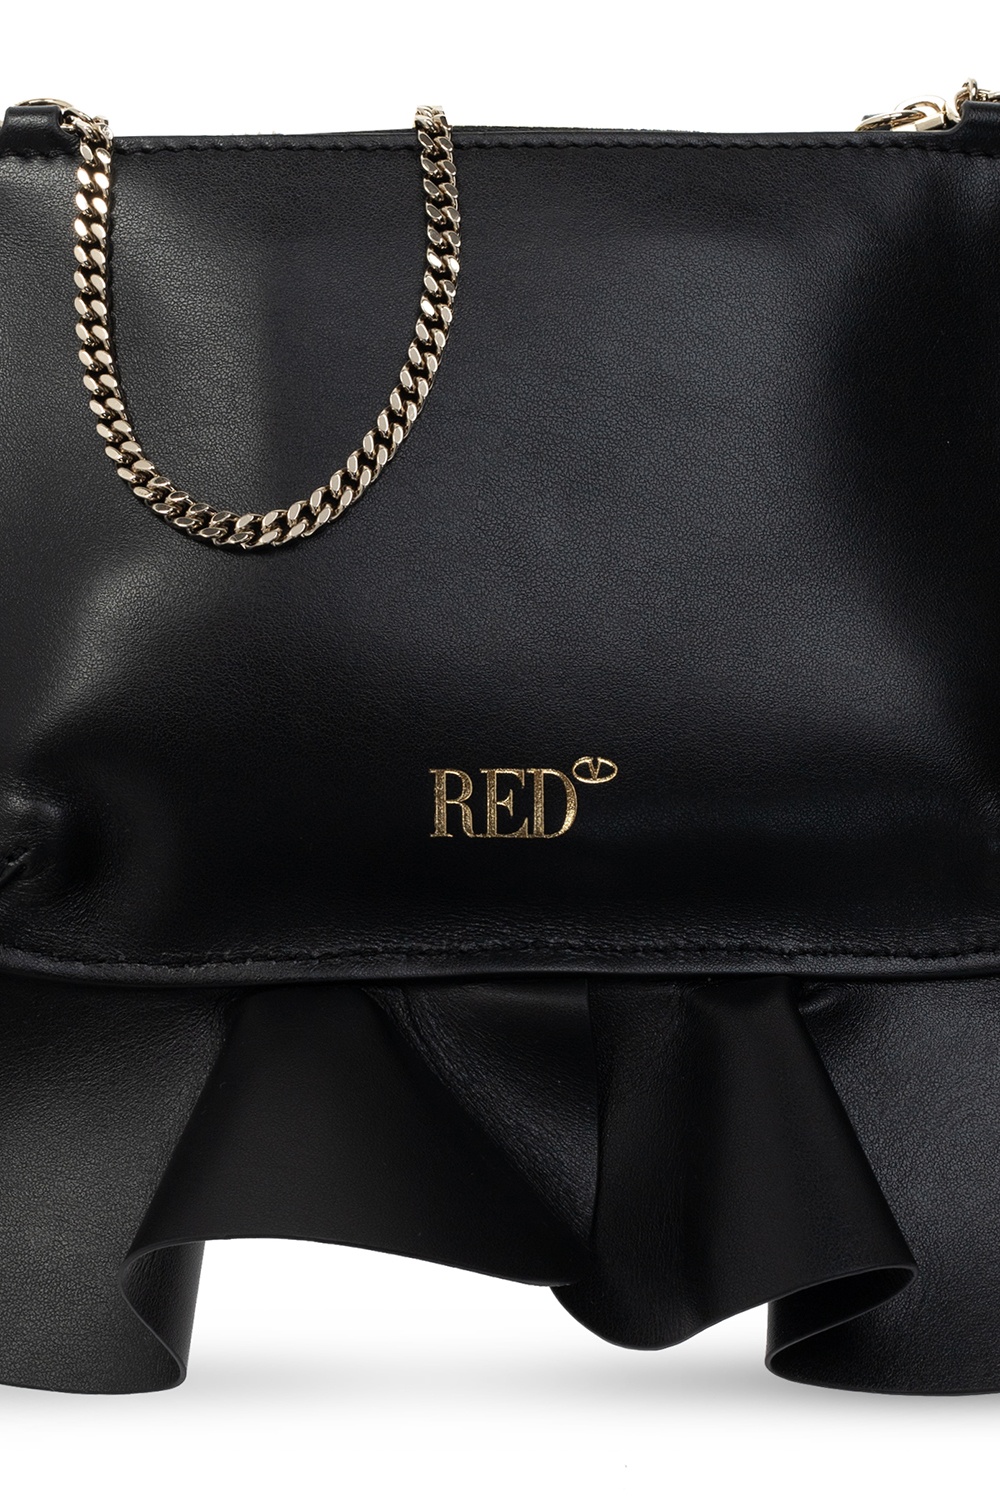 Shoulder bags Valentino Red - Rock Ruffles black calfskin shoulder bag -  QQ2B0A76EAV0NO